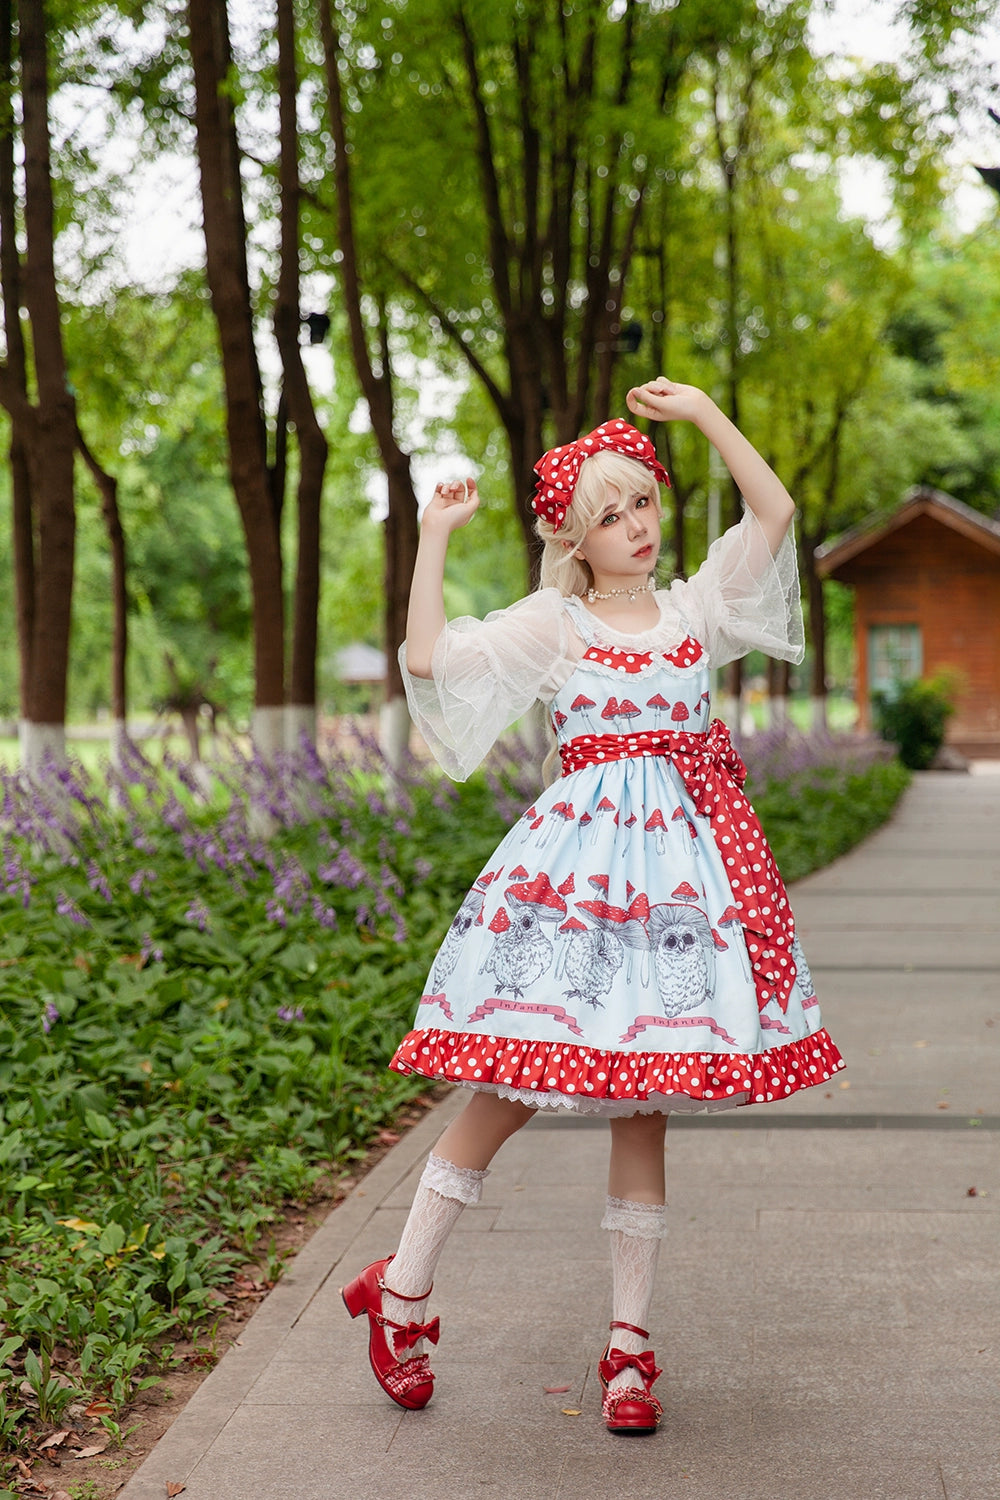 Infanta~Mushroom~Sweet Lolita JSK Dress Printing Dress Short Sleeve Shirt   